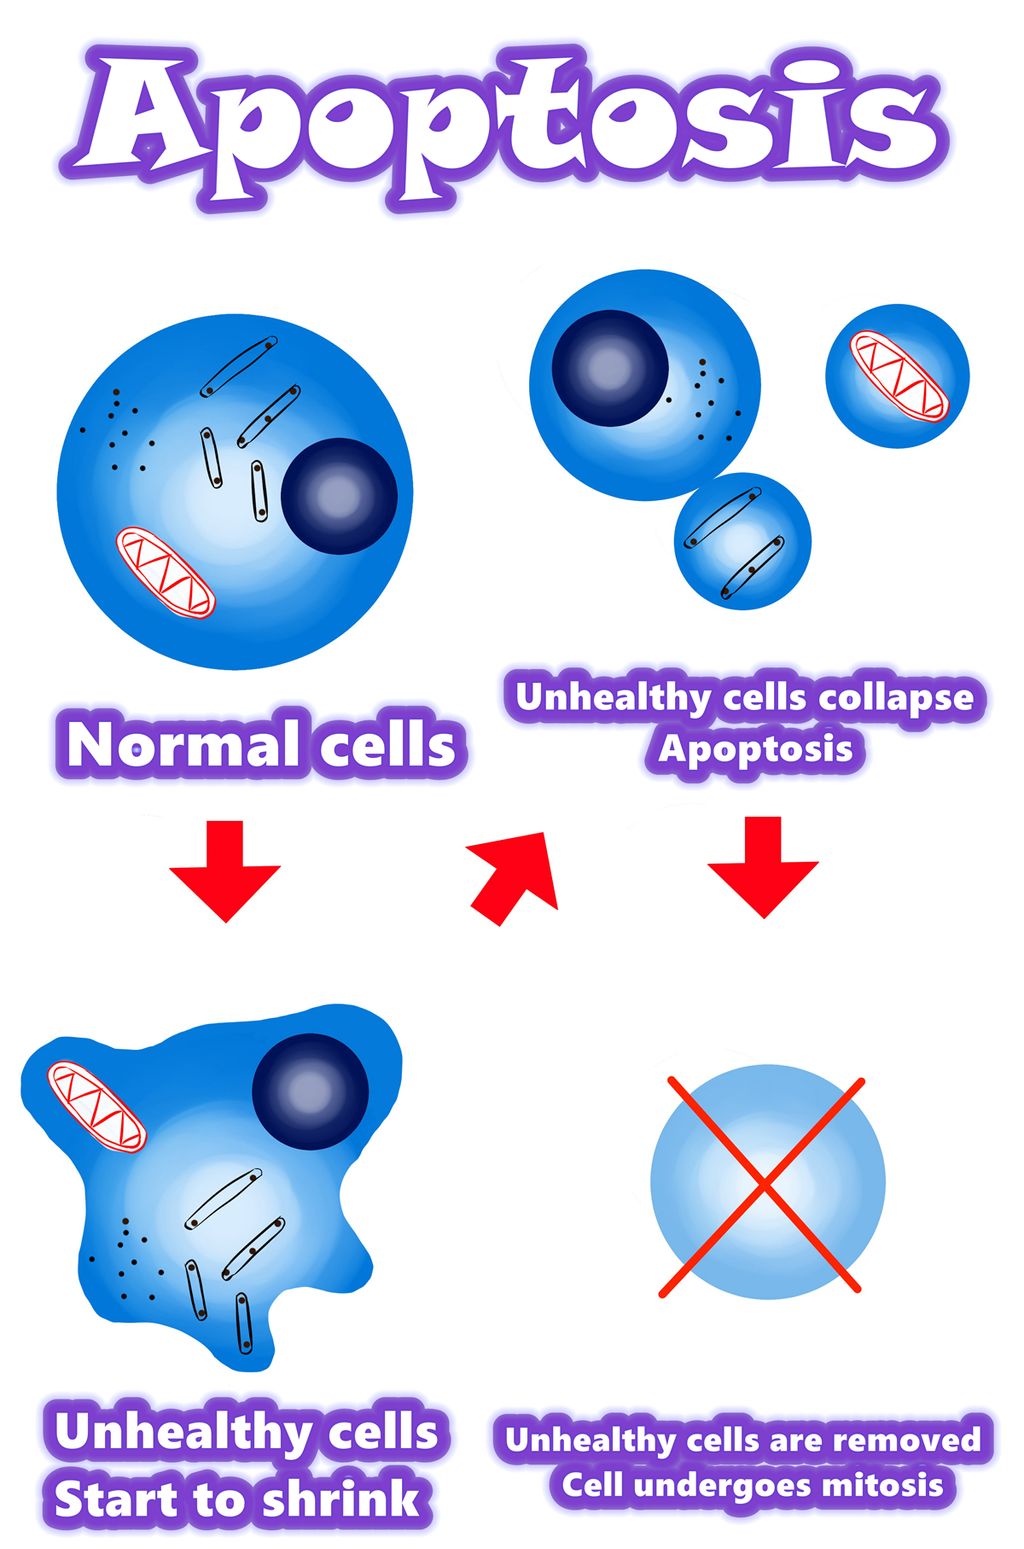 Solamargine | La millor solució per a les cèl·lules cancerígenes el 2021 | Apoptosi vs cèl·lules cancerígenes | Apoptosi vs cèl·lules anormals | Apoptosi vs cèl·lules mutants | Visió general / Resum / Mecanisme d’apoptosi